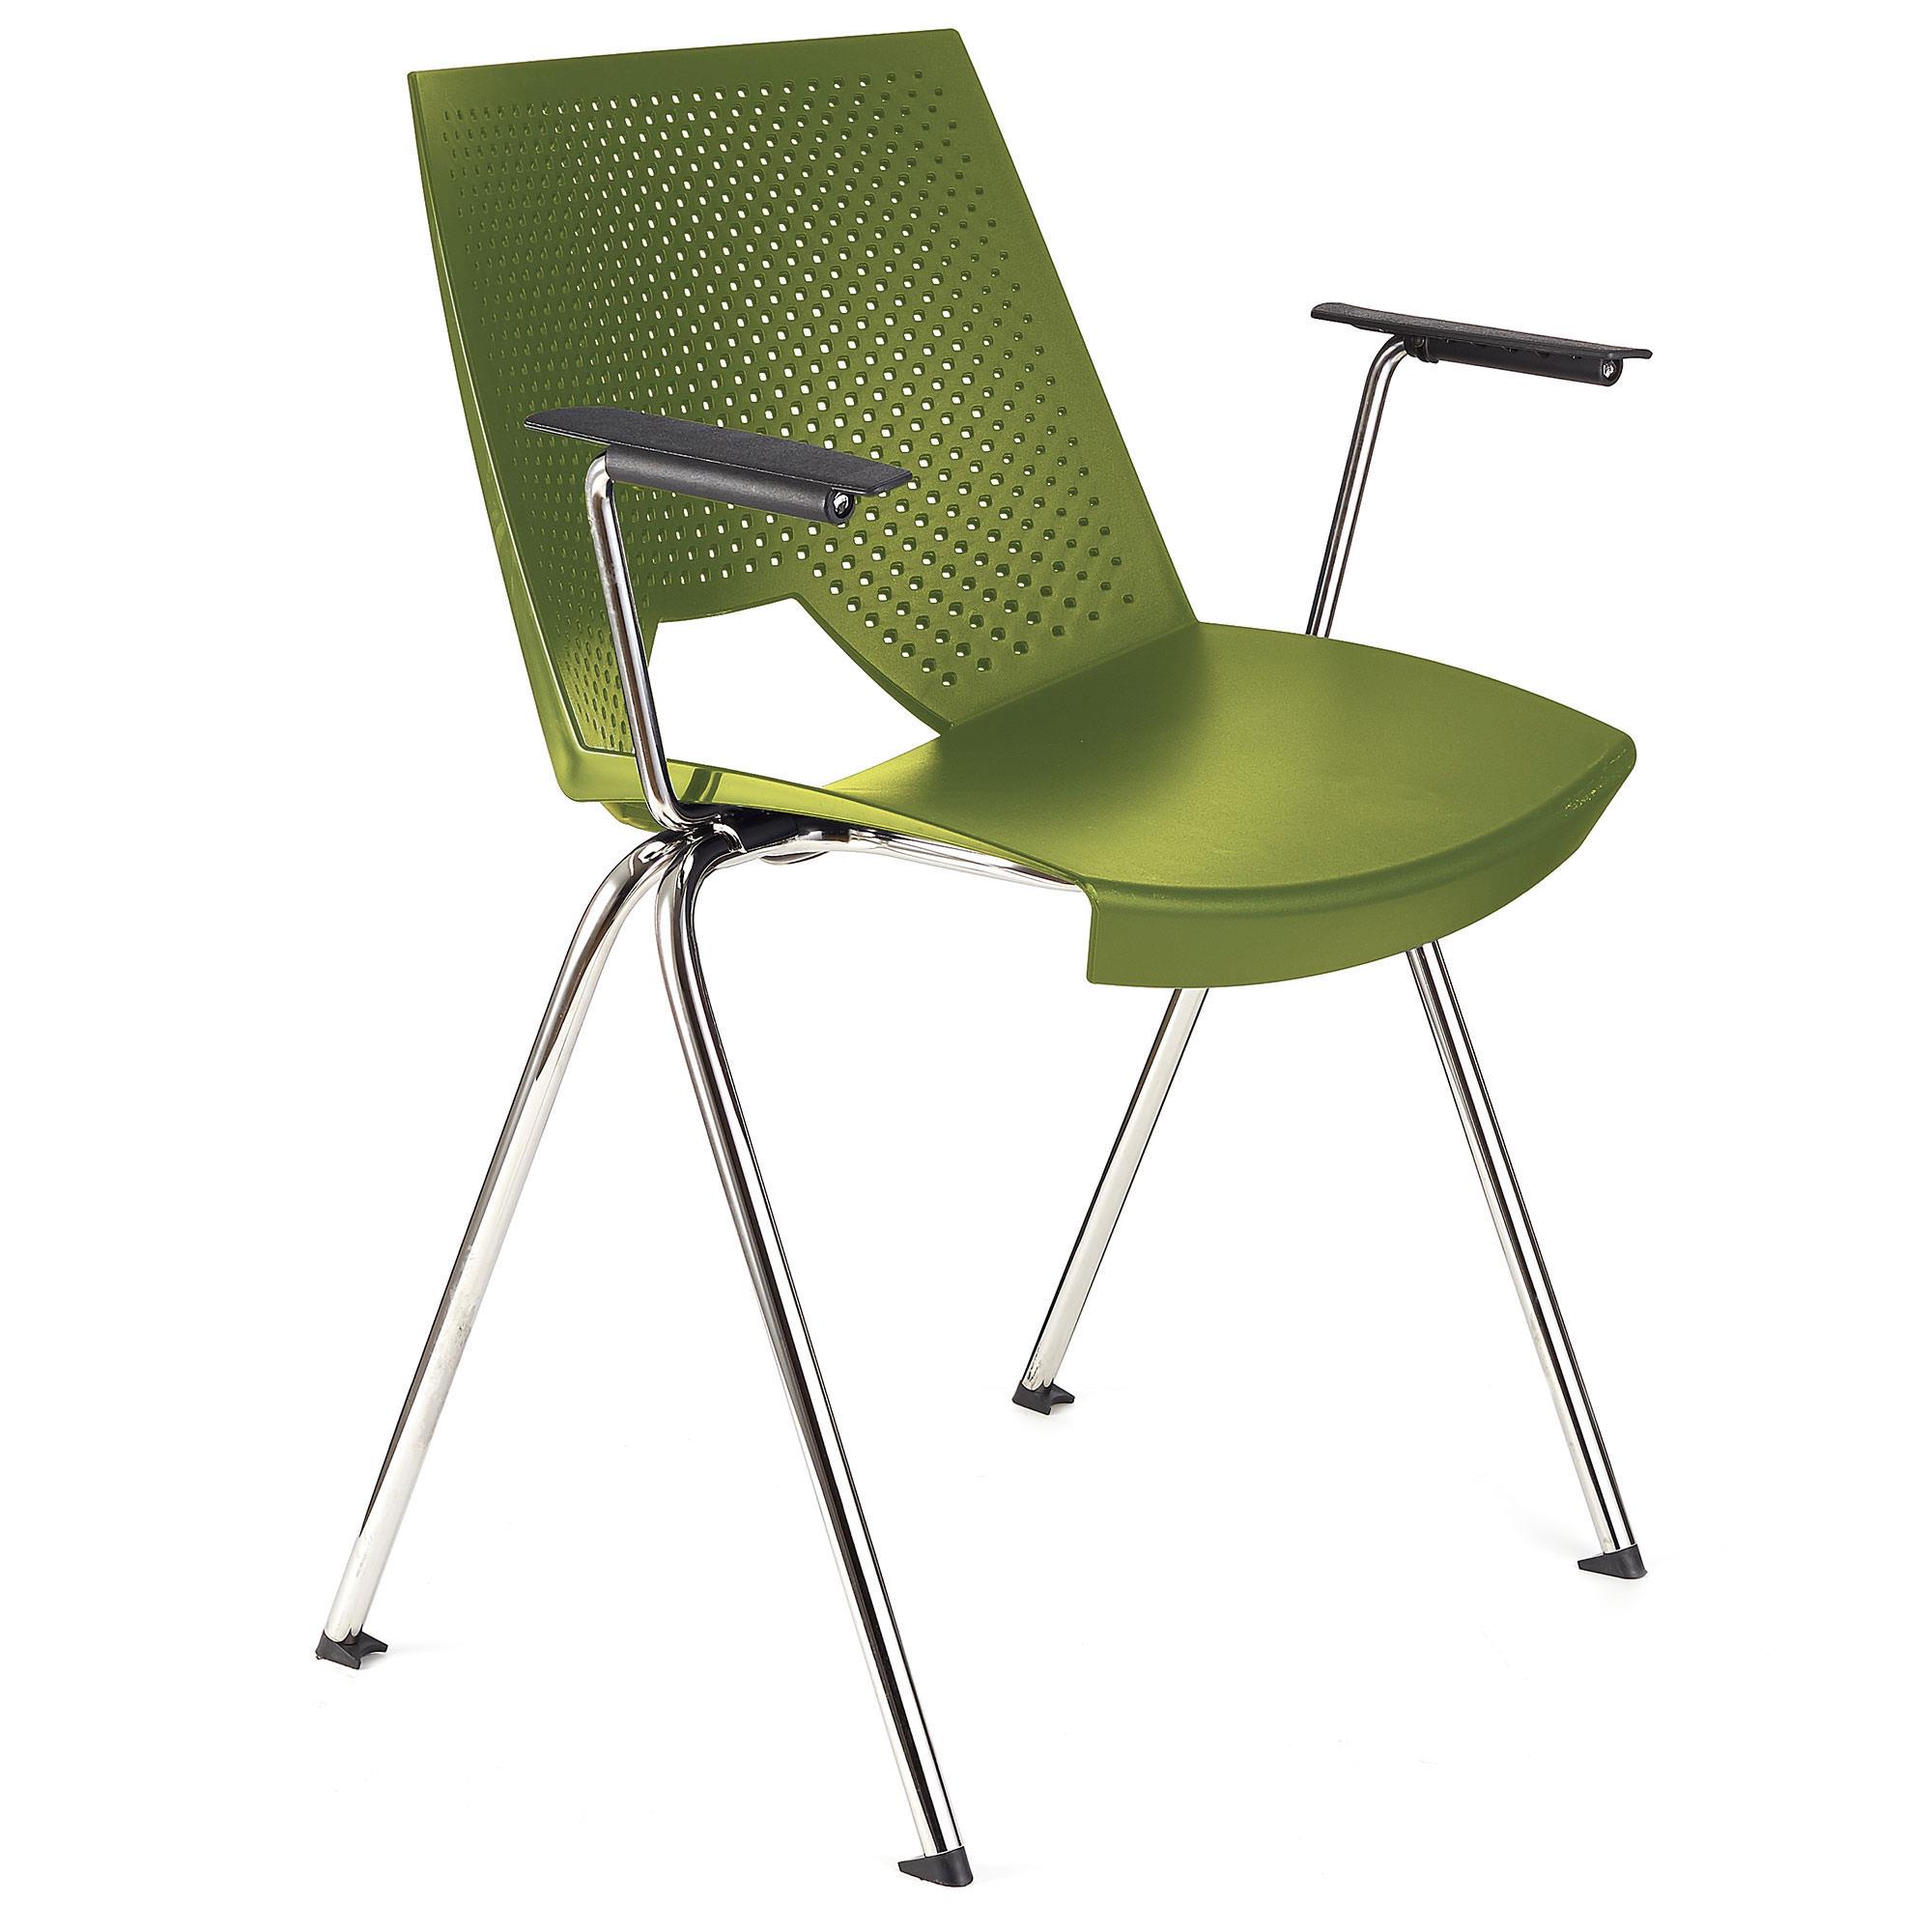 Cadeira de Visita ENZO COM BRAÇOS, Confortável e Prática, Empilhável, Cor Verde